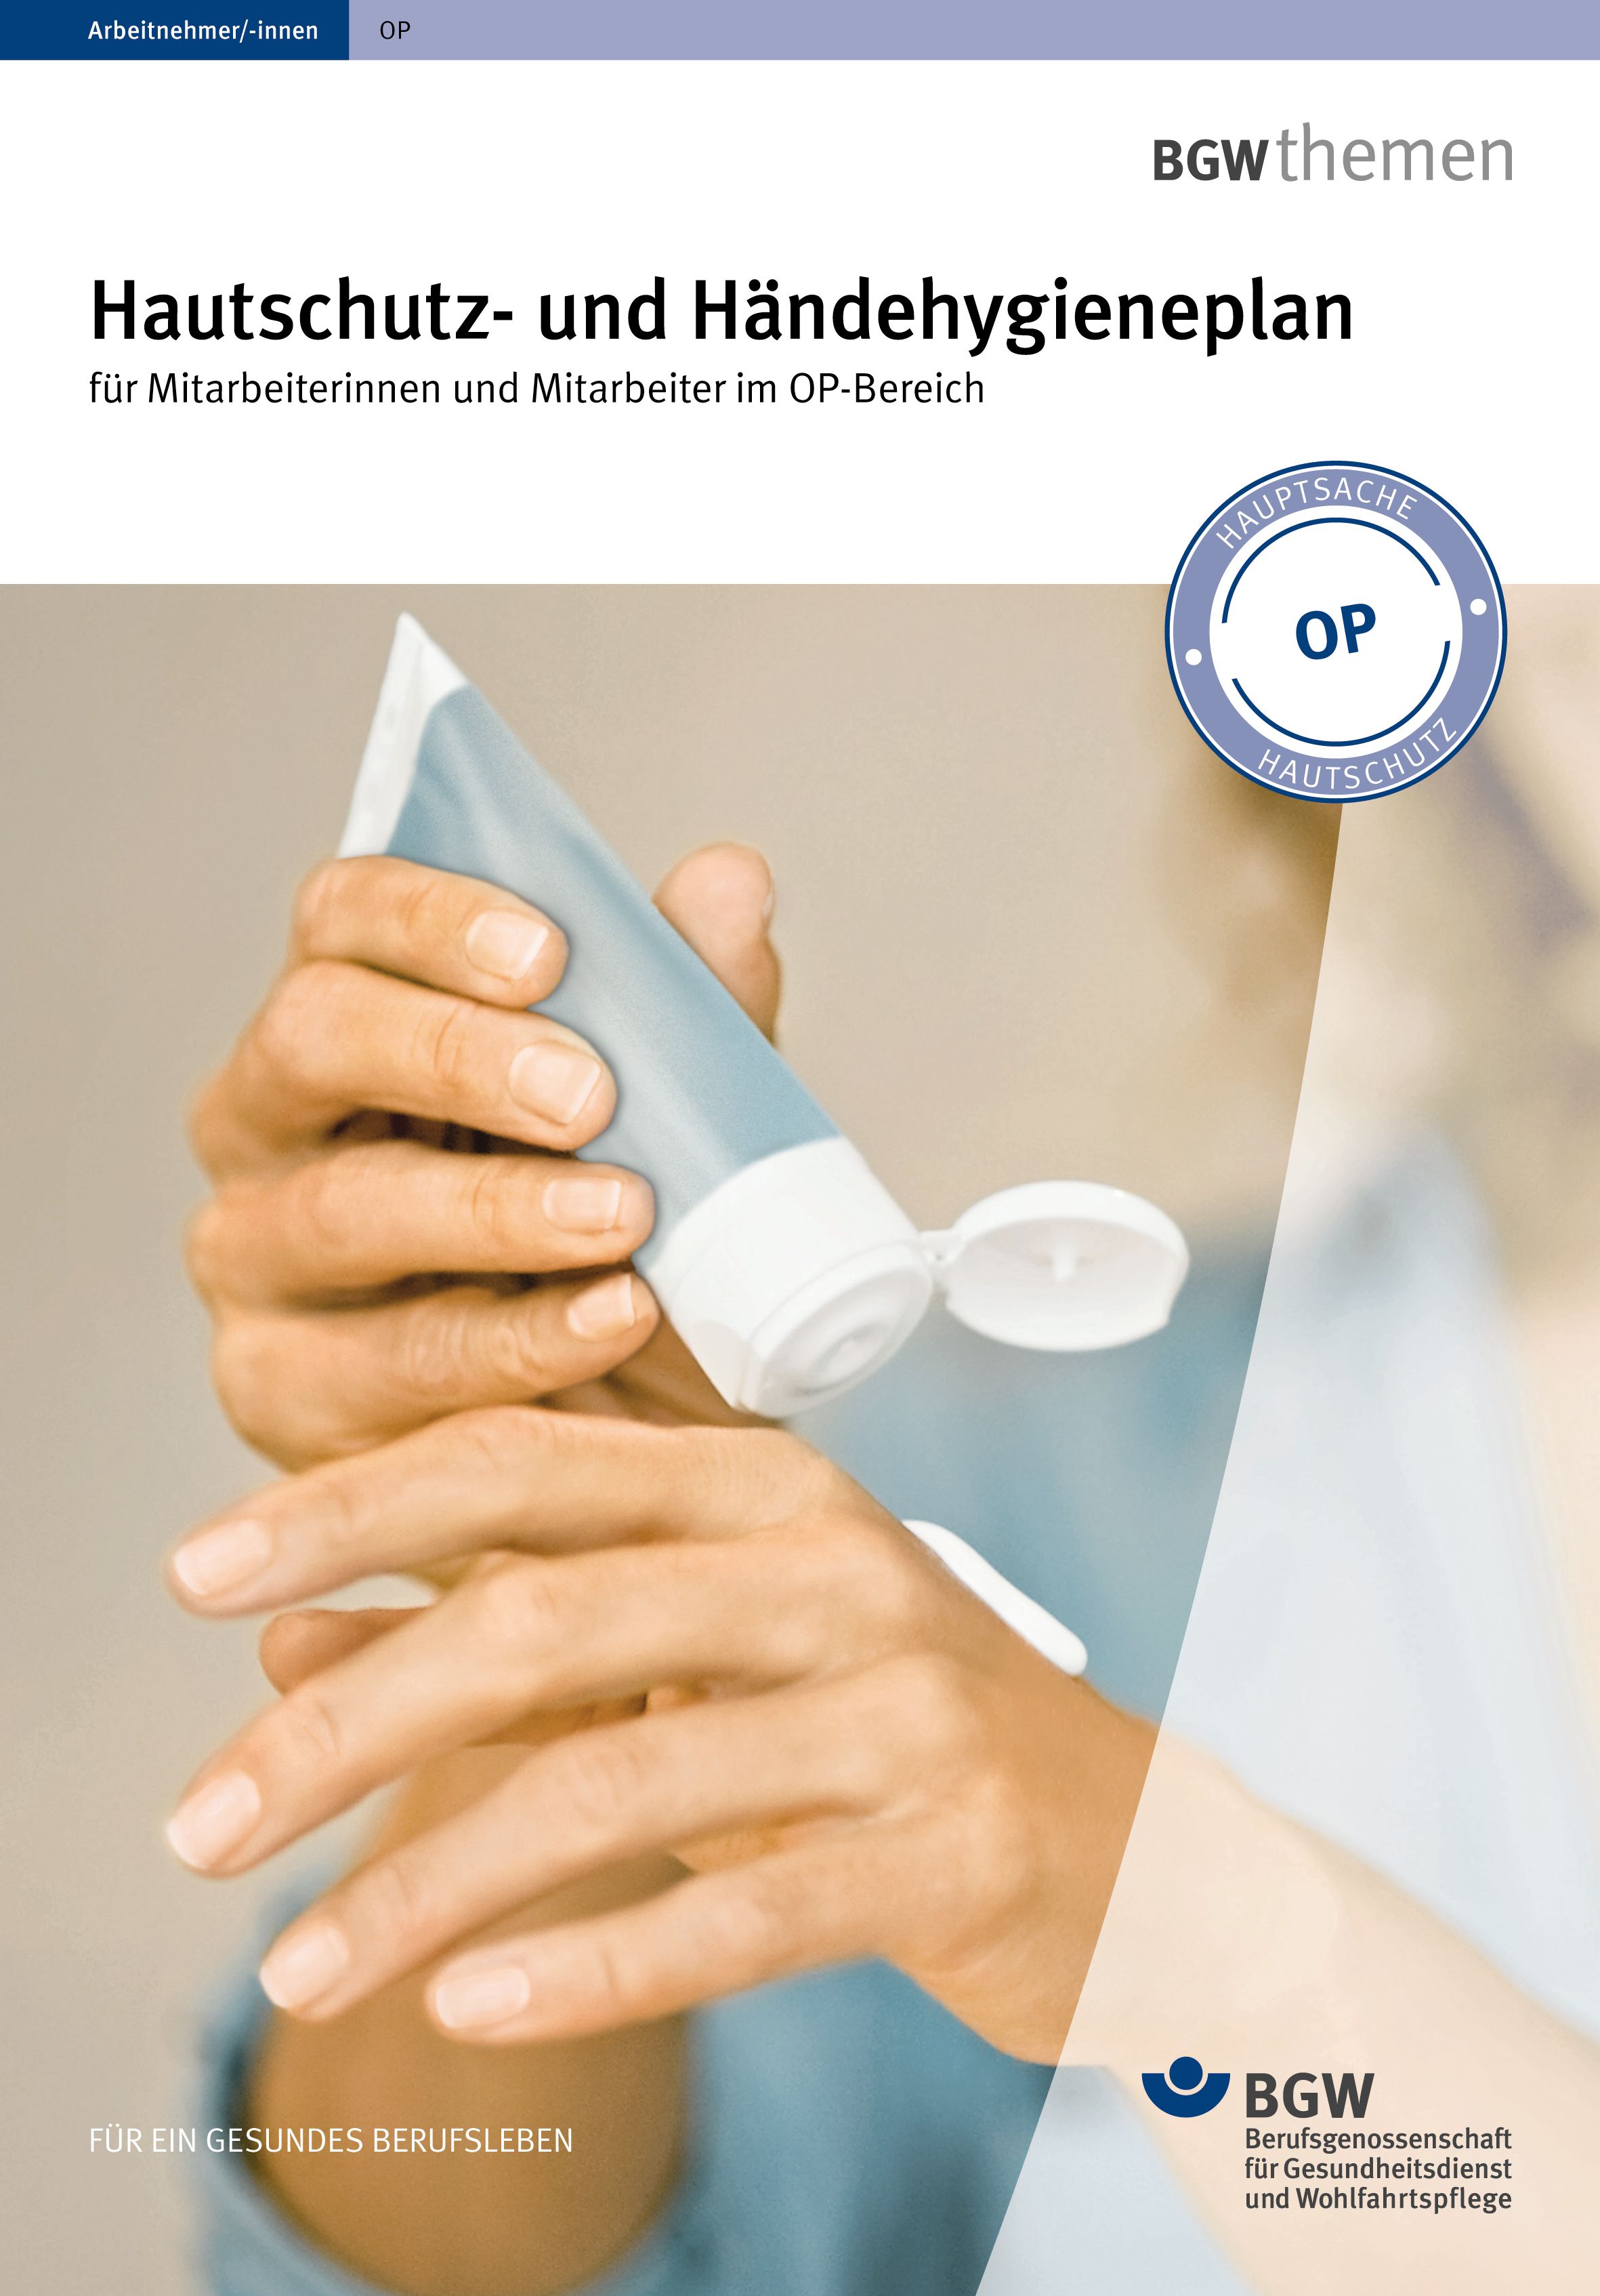 Titelbild: Hautschutz- und Händehygieneplan für den OP-Bereich